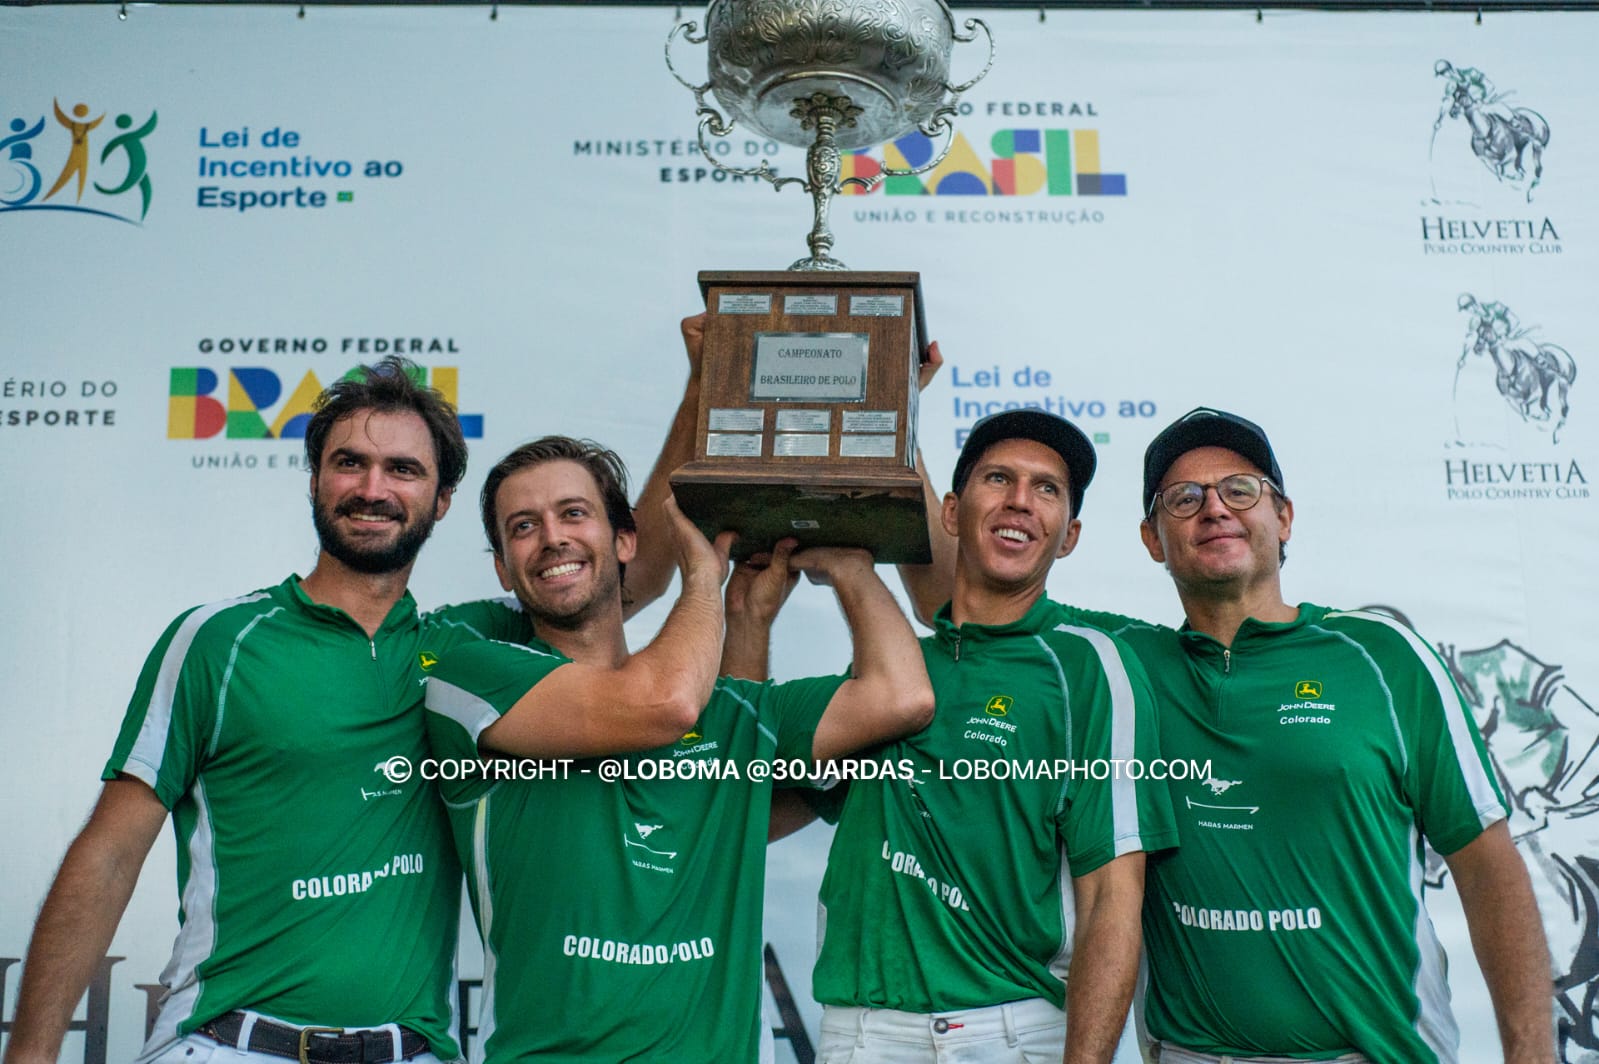 Equipe Colorado, campeã do Campeonato Brasileiro de Polo (crédito - Marilia Lobo/30Jardas)